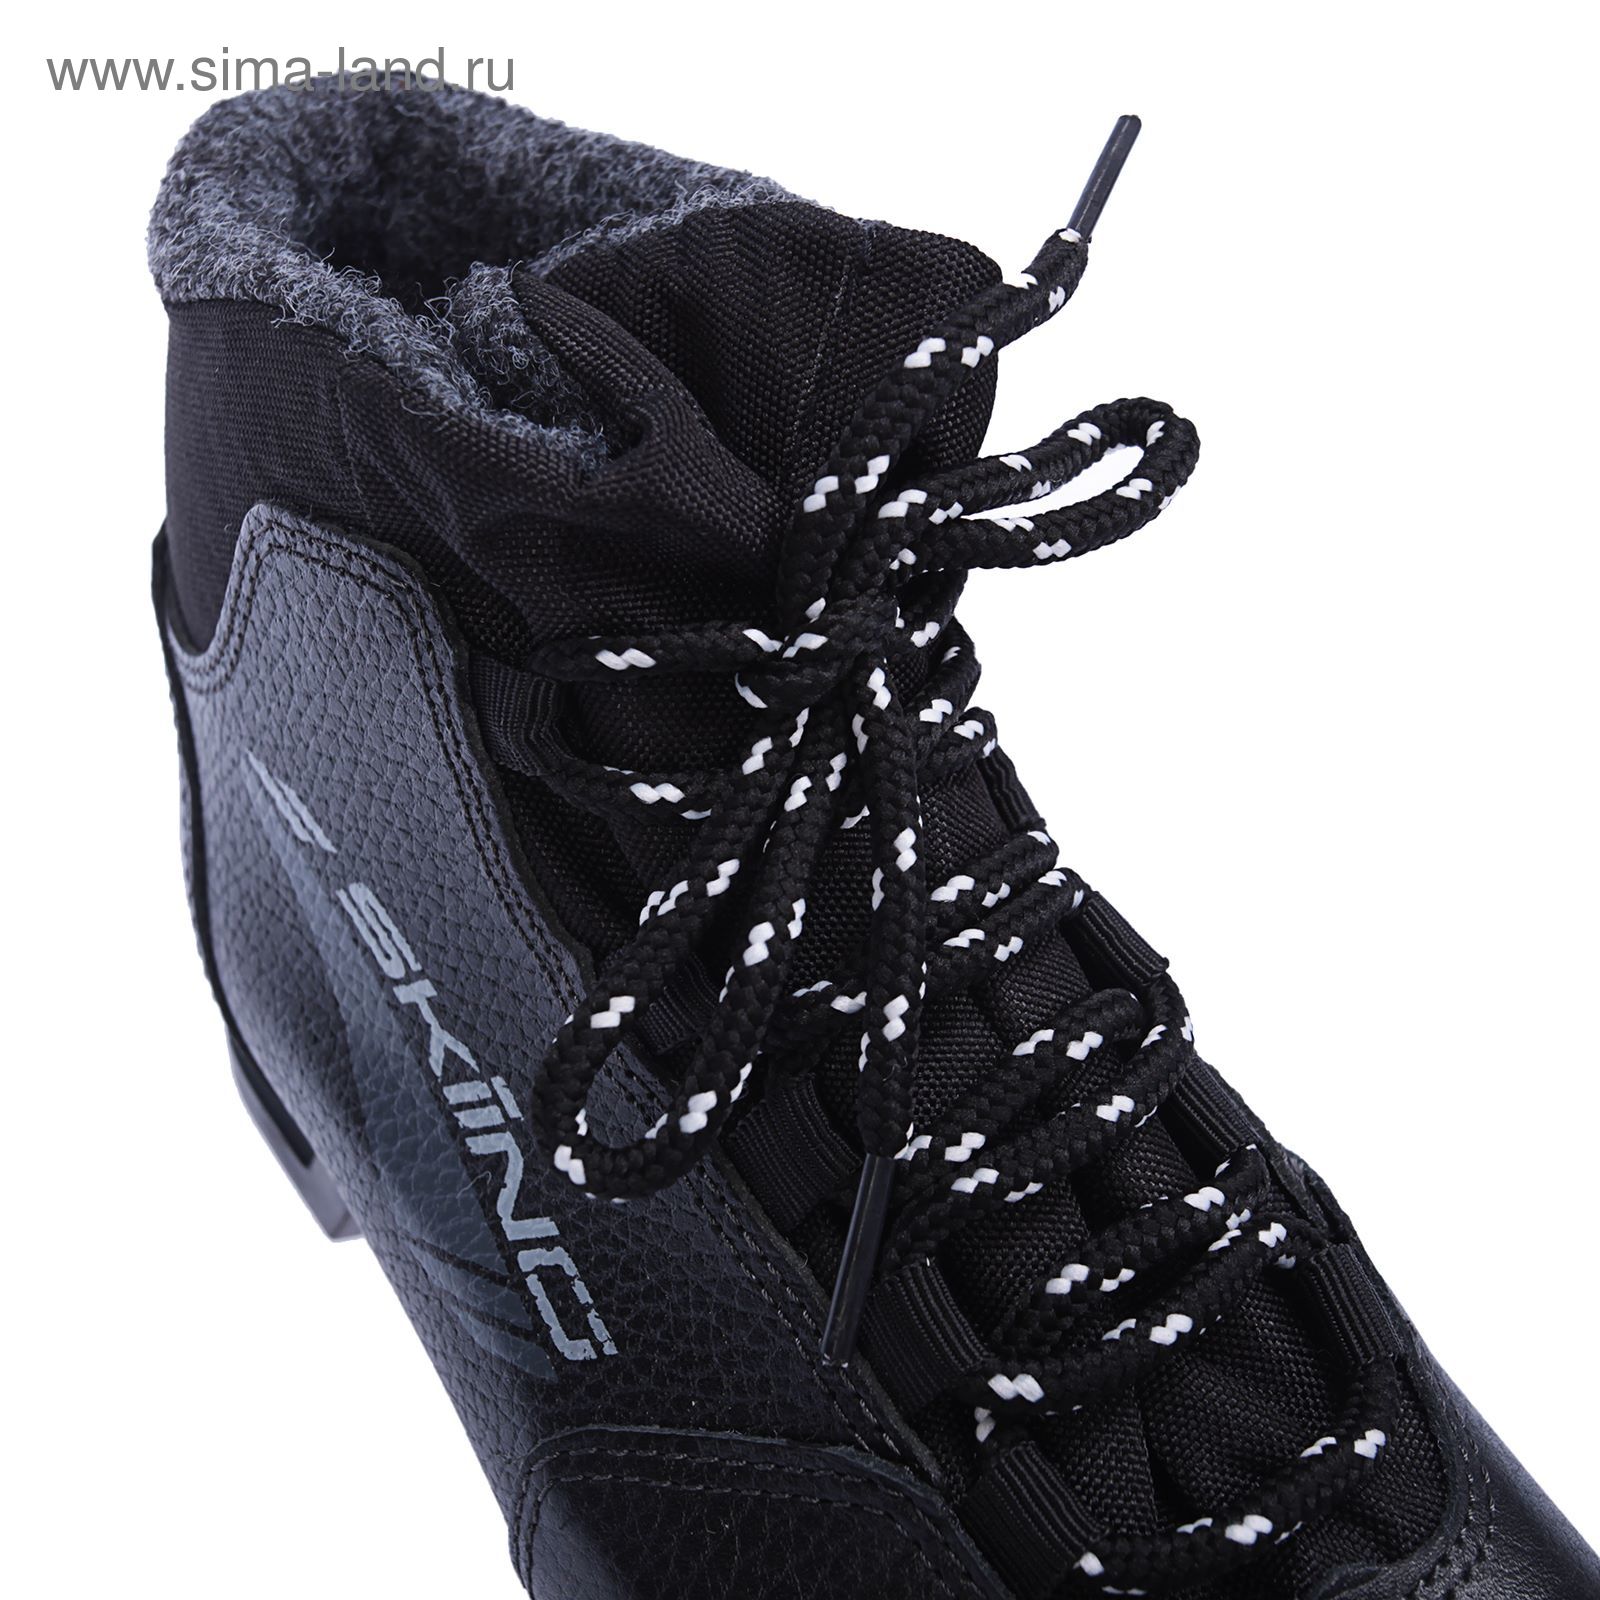 Ботинки лыжные ТРЕК Skiing НК NN75 (черный, лого серый) (р.45)